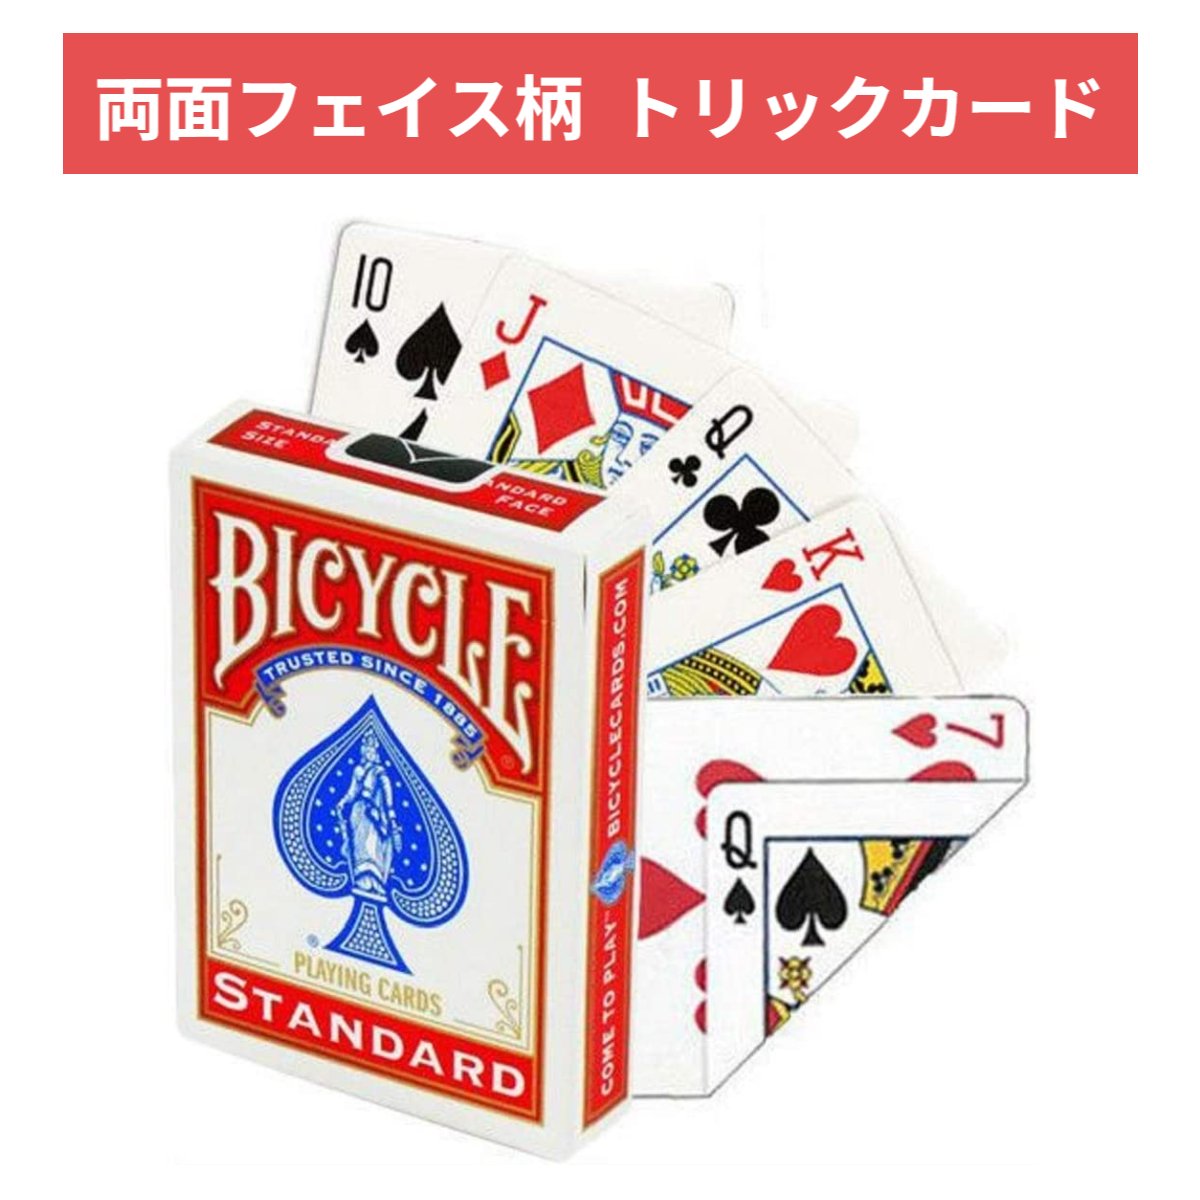 BICYCLE バイスクル トランプ Wフェイス トリックカード 手品 マジック Double Face 両面表デザイン カード・トランプ 